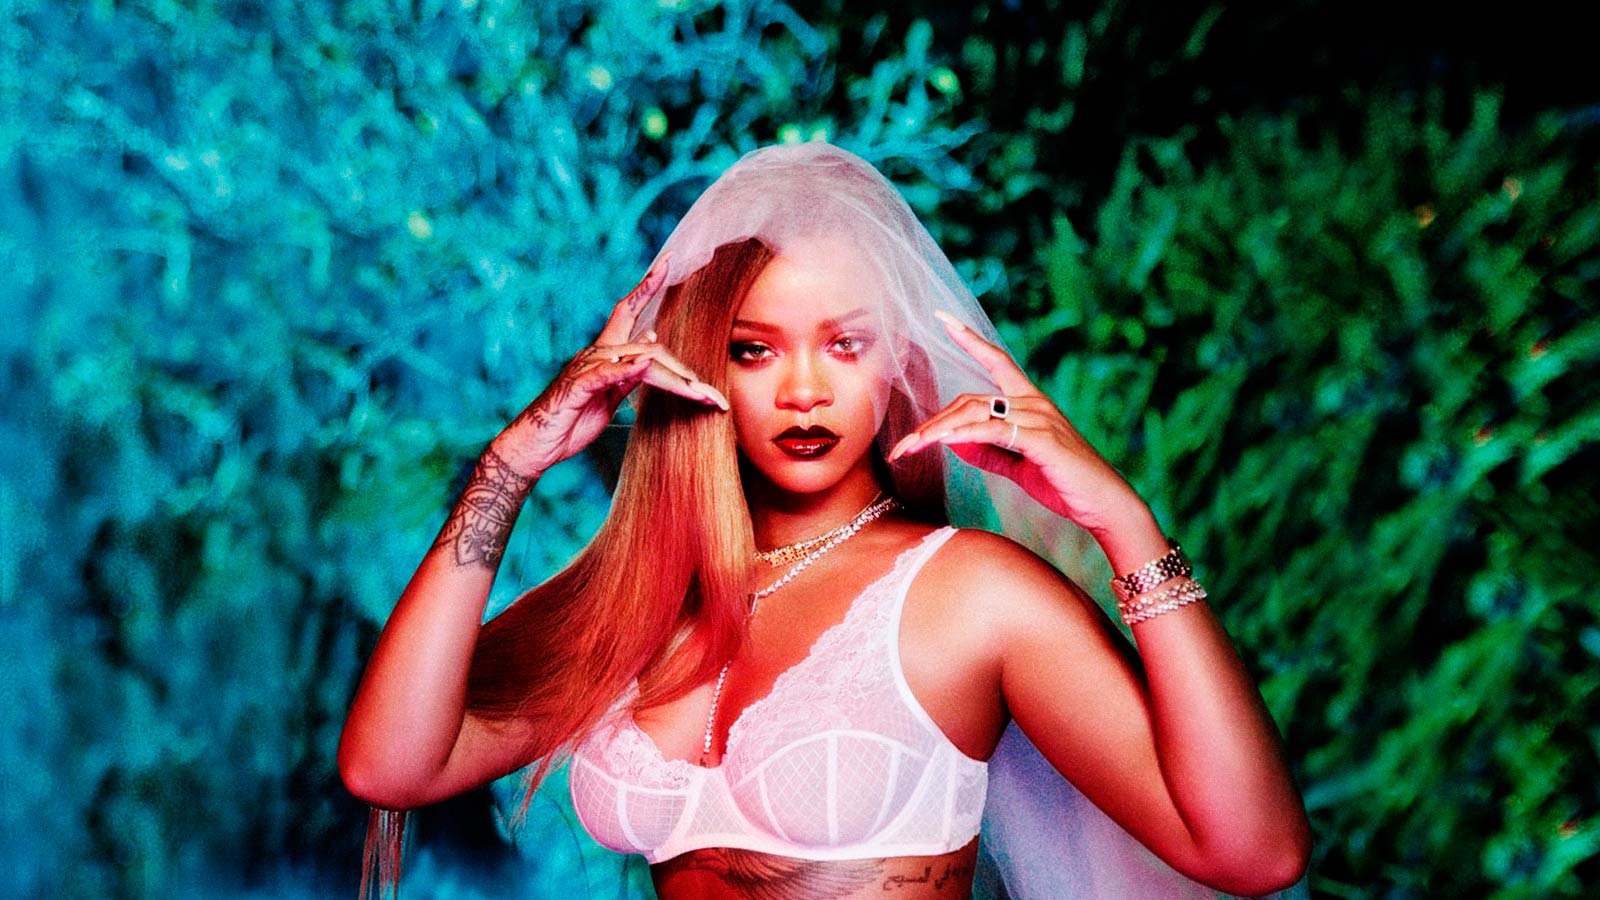 Rihanna lançou sua linha de lingerie com muita diversidade e